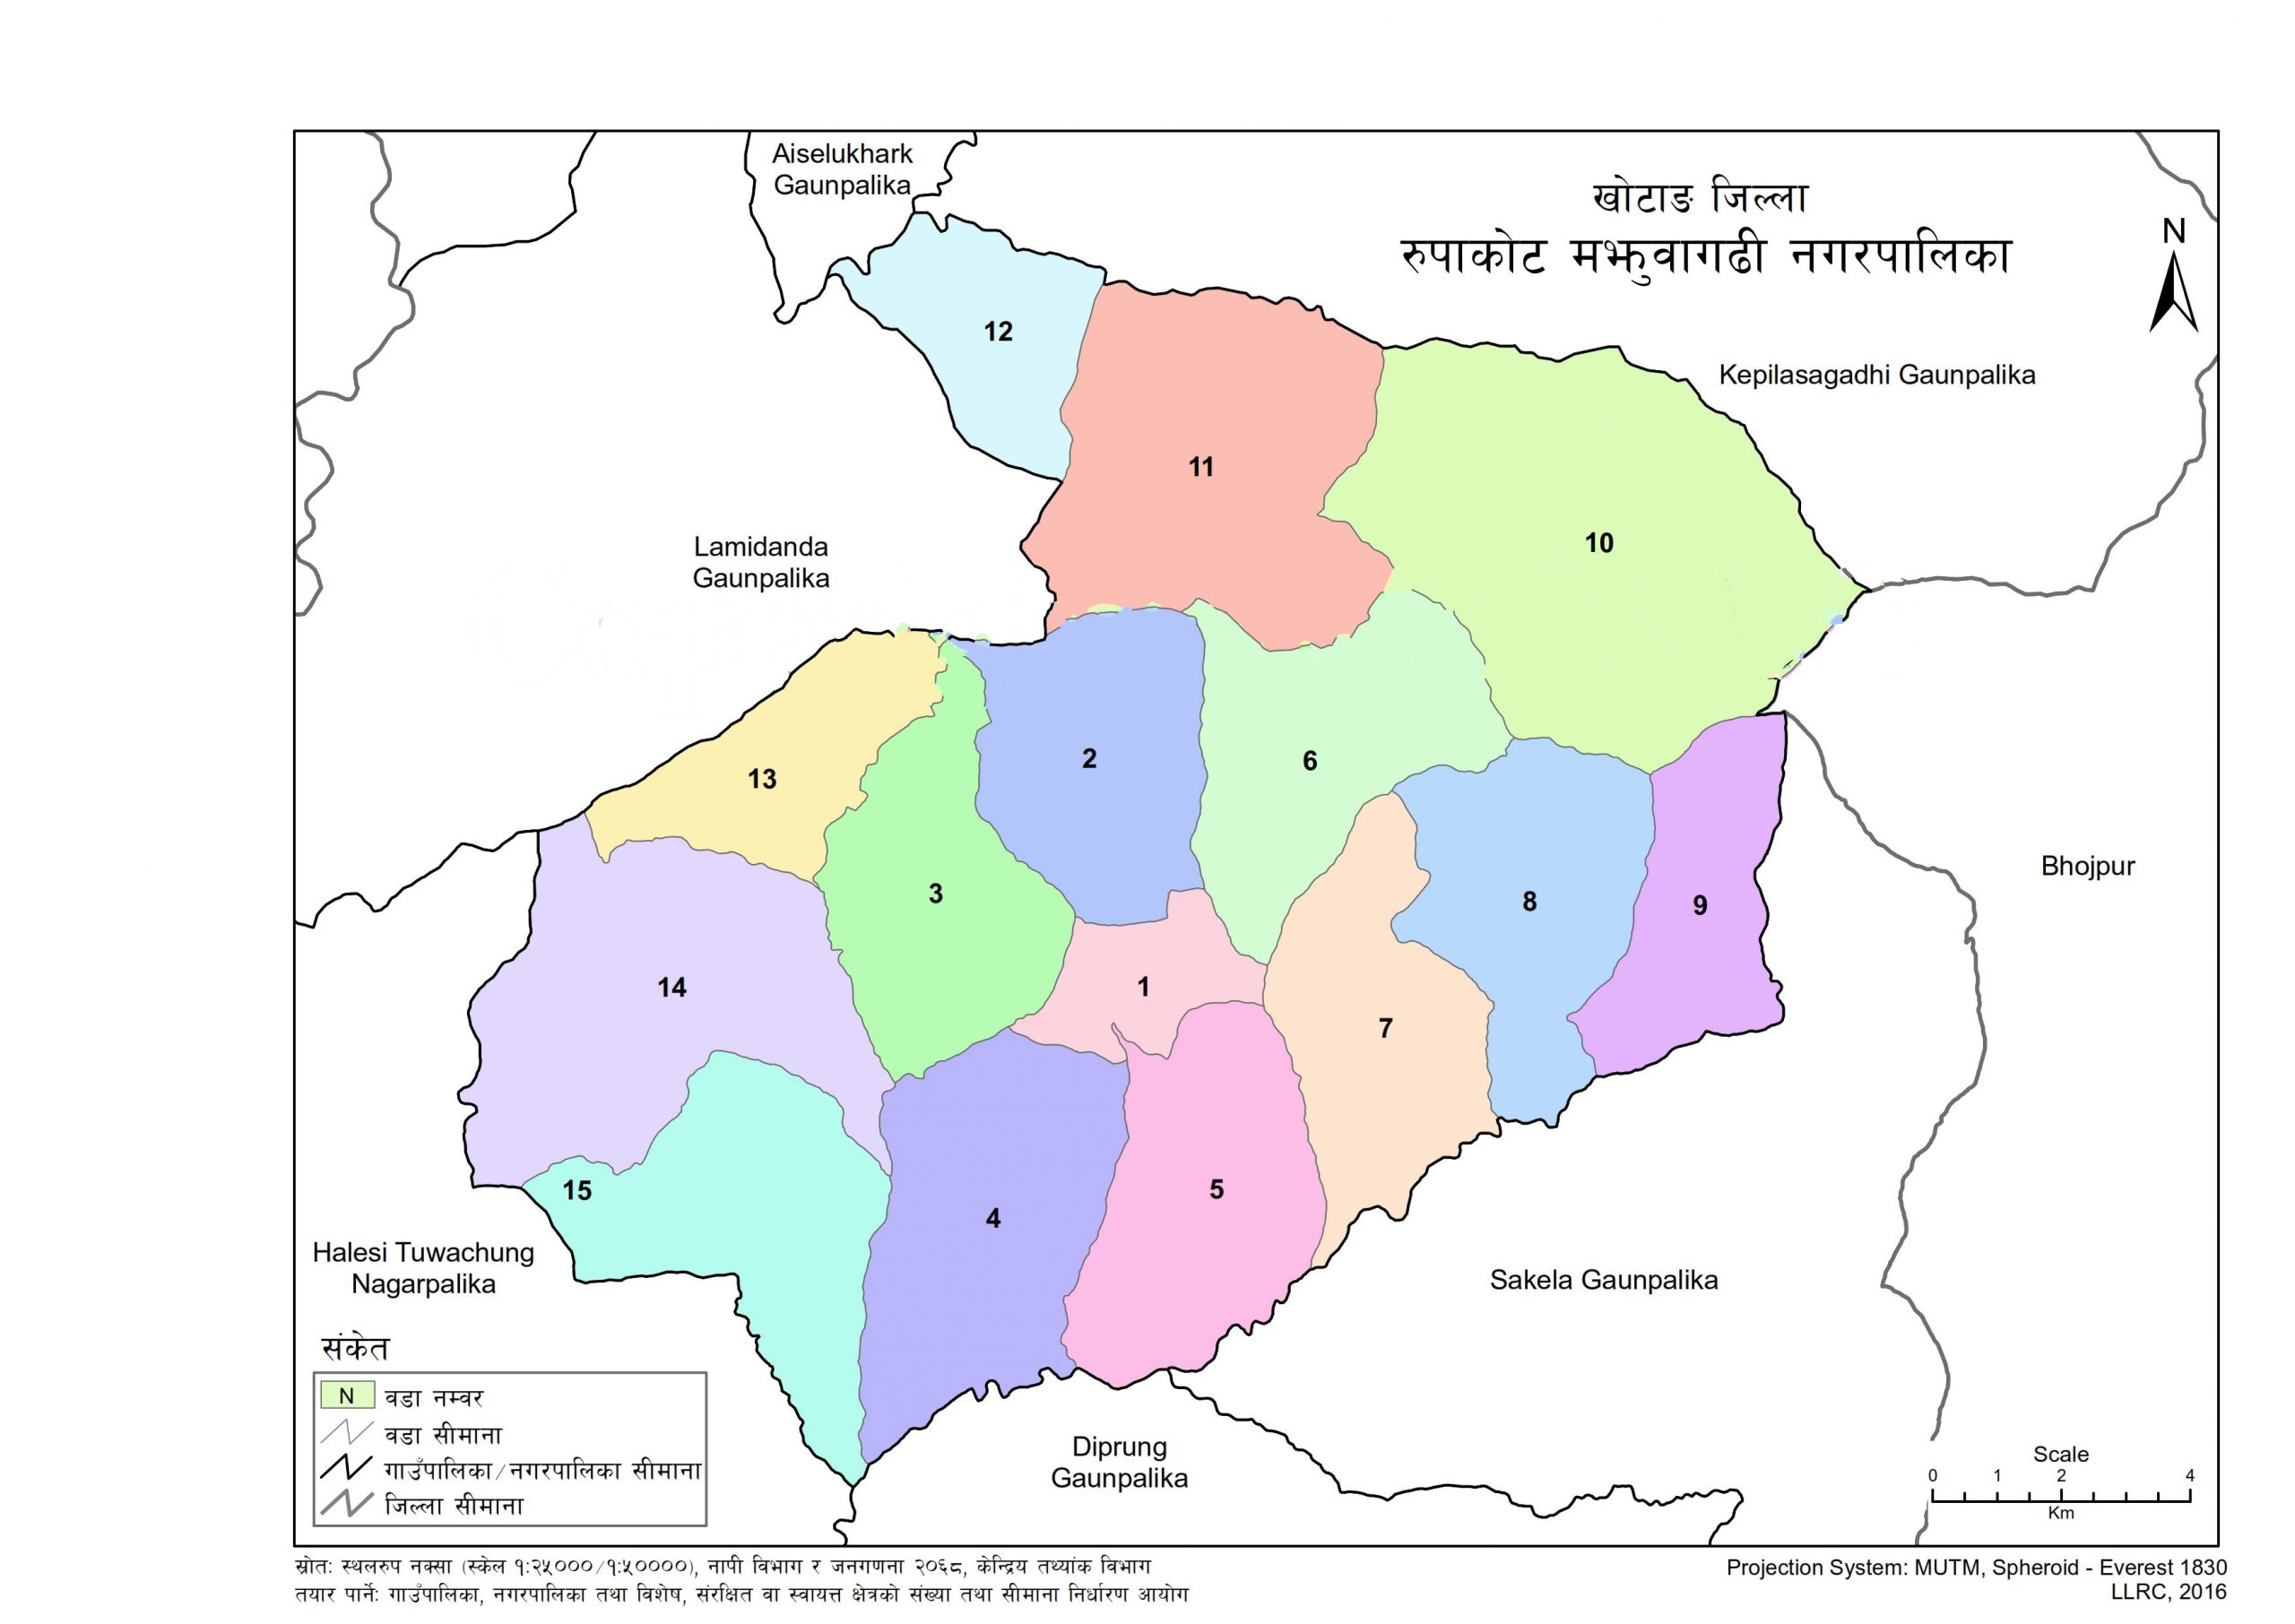 Diktel Rupakot Majhuwagadhi Municipality Profile | Facts & Statistics